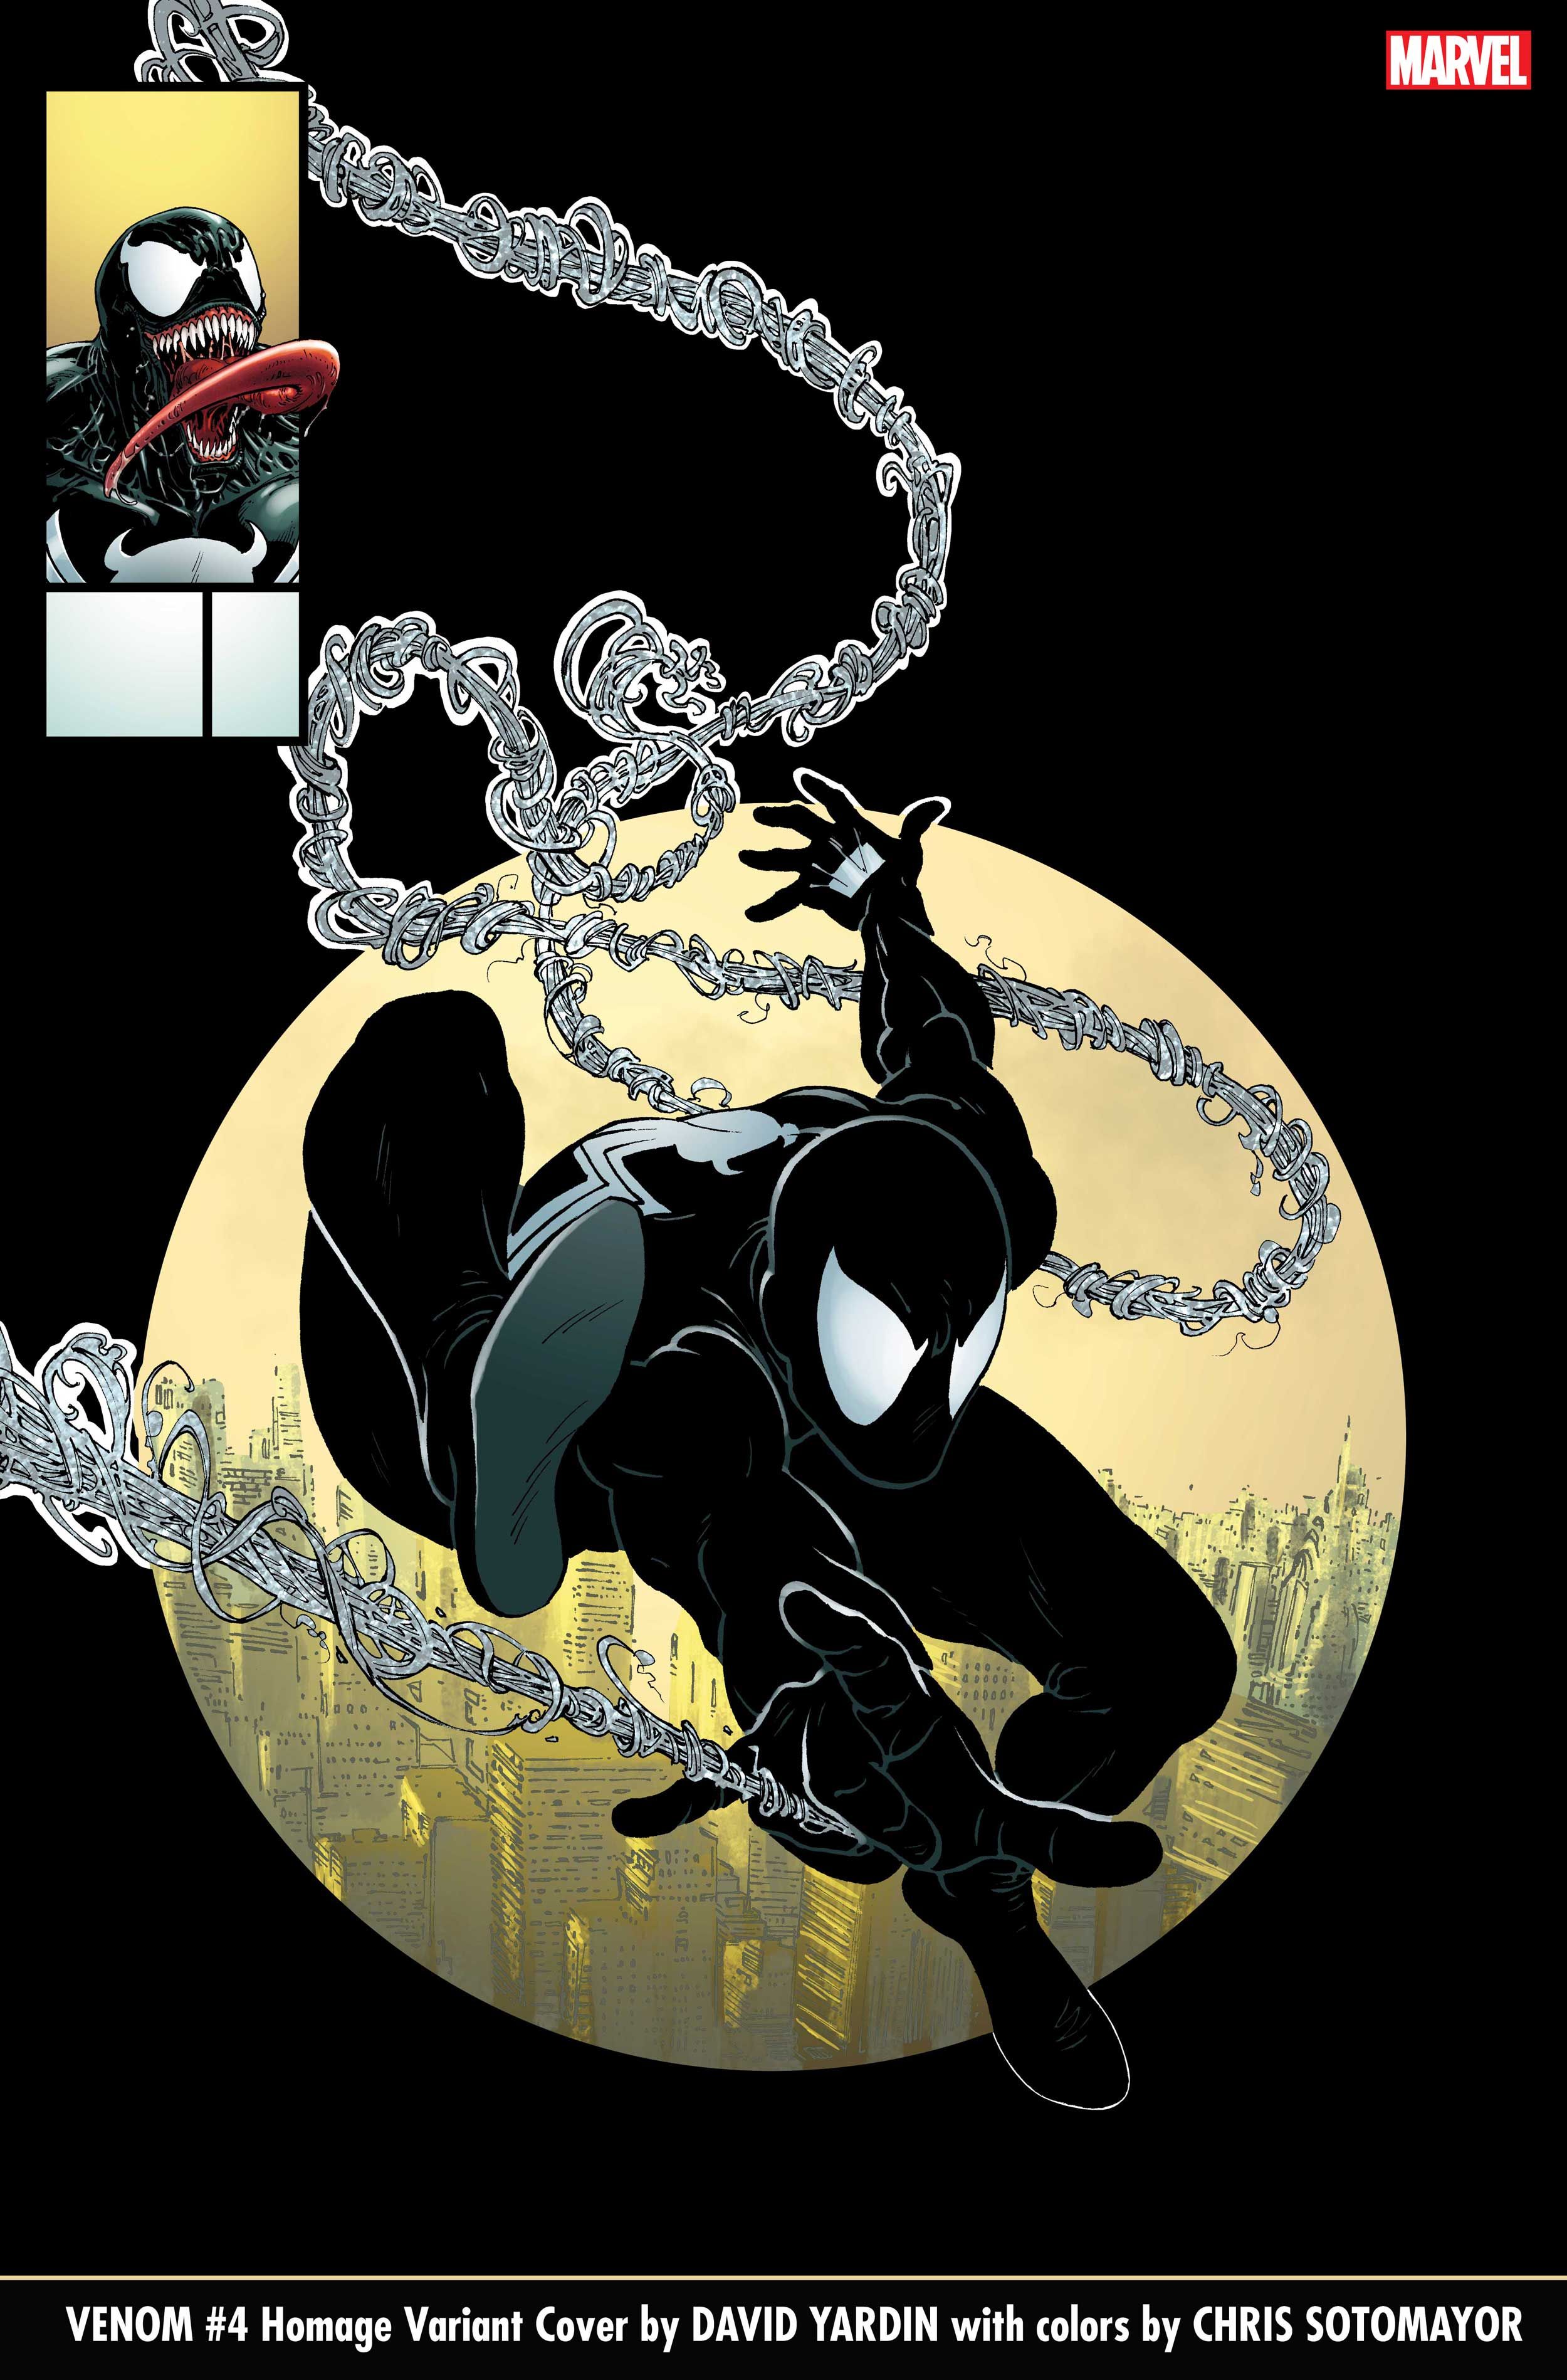 David Yardin Homage Variant Cover for Venom #4